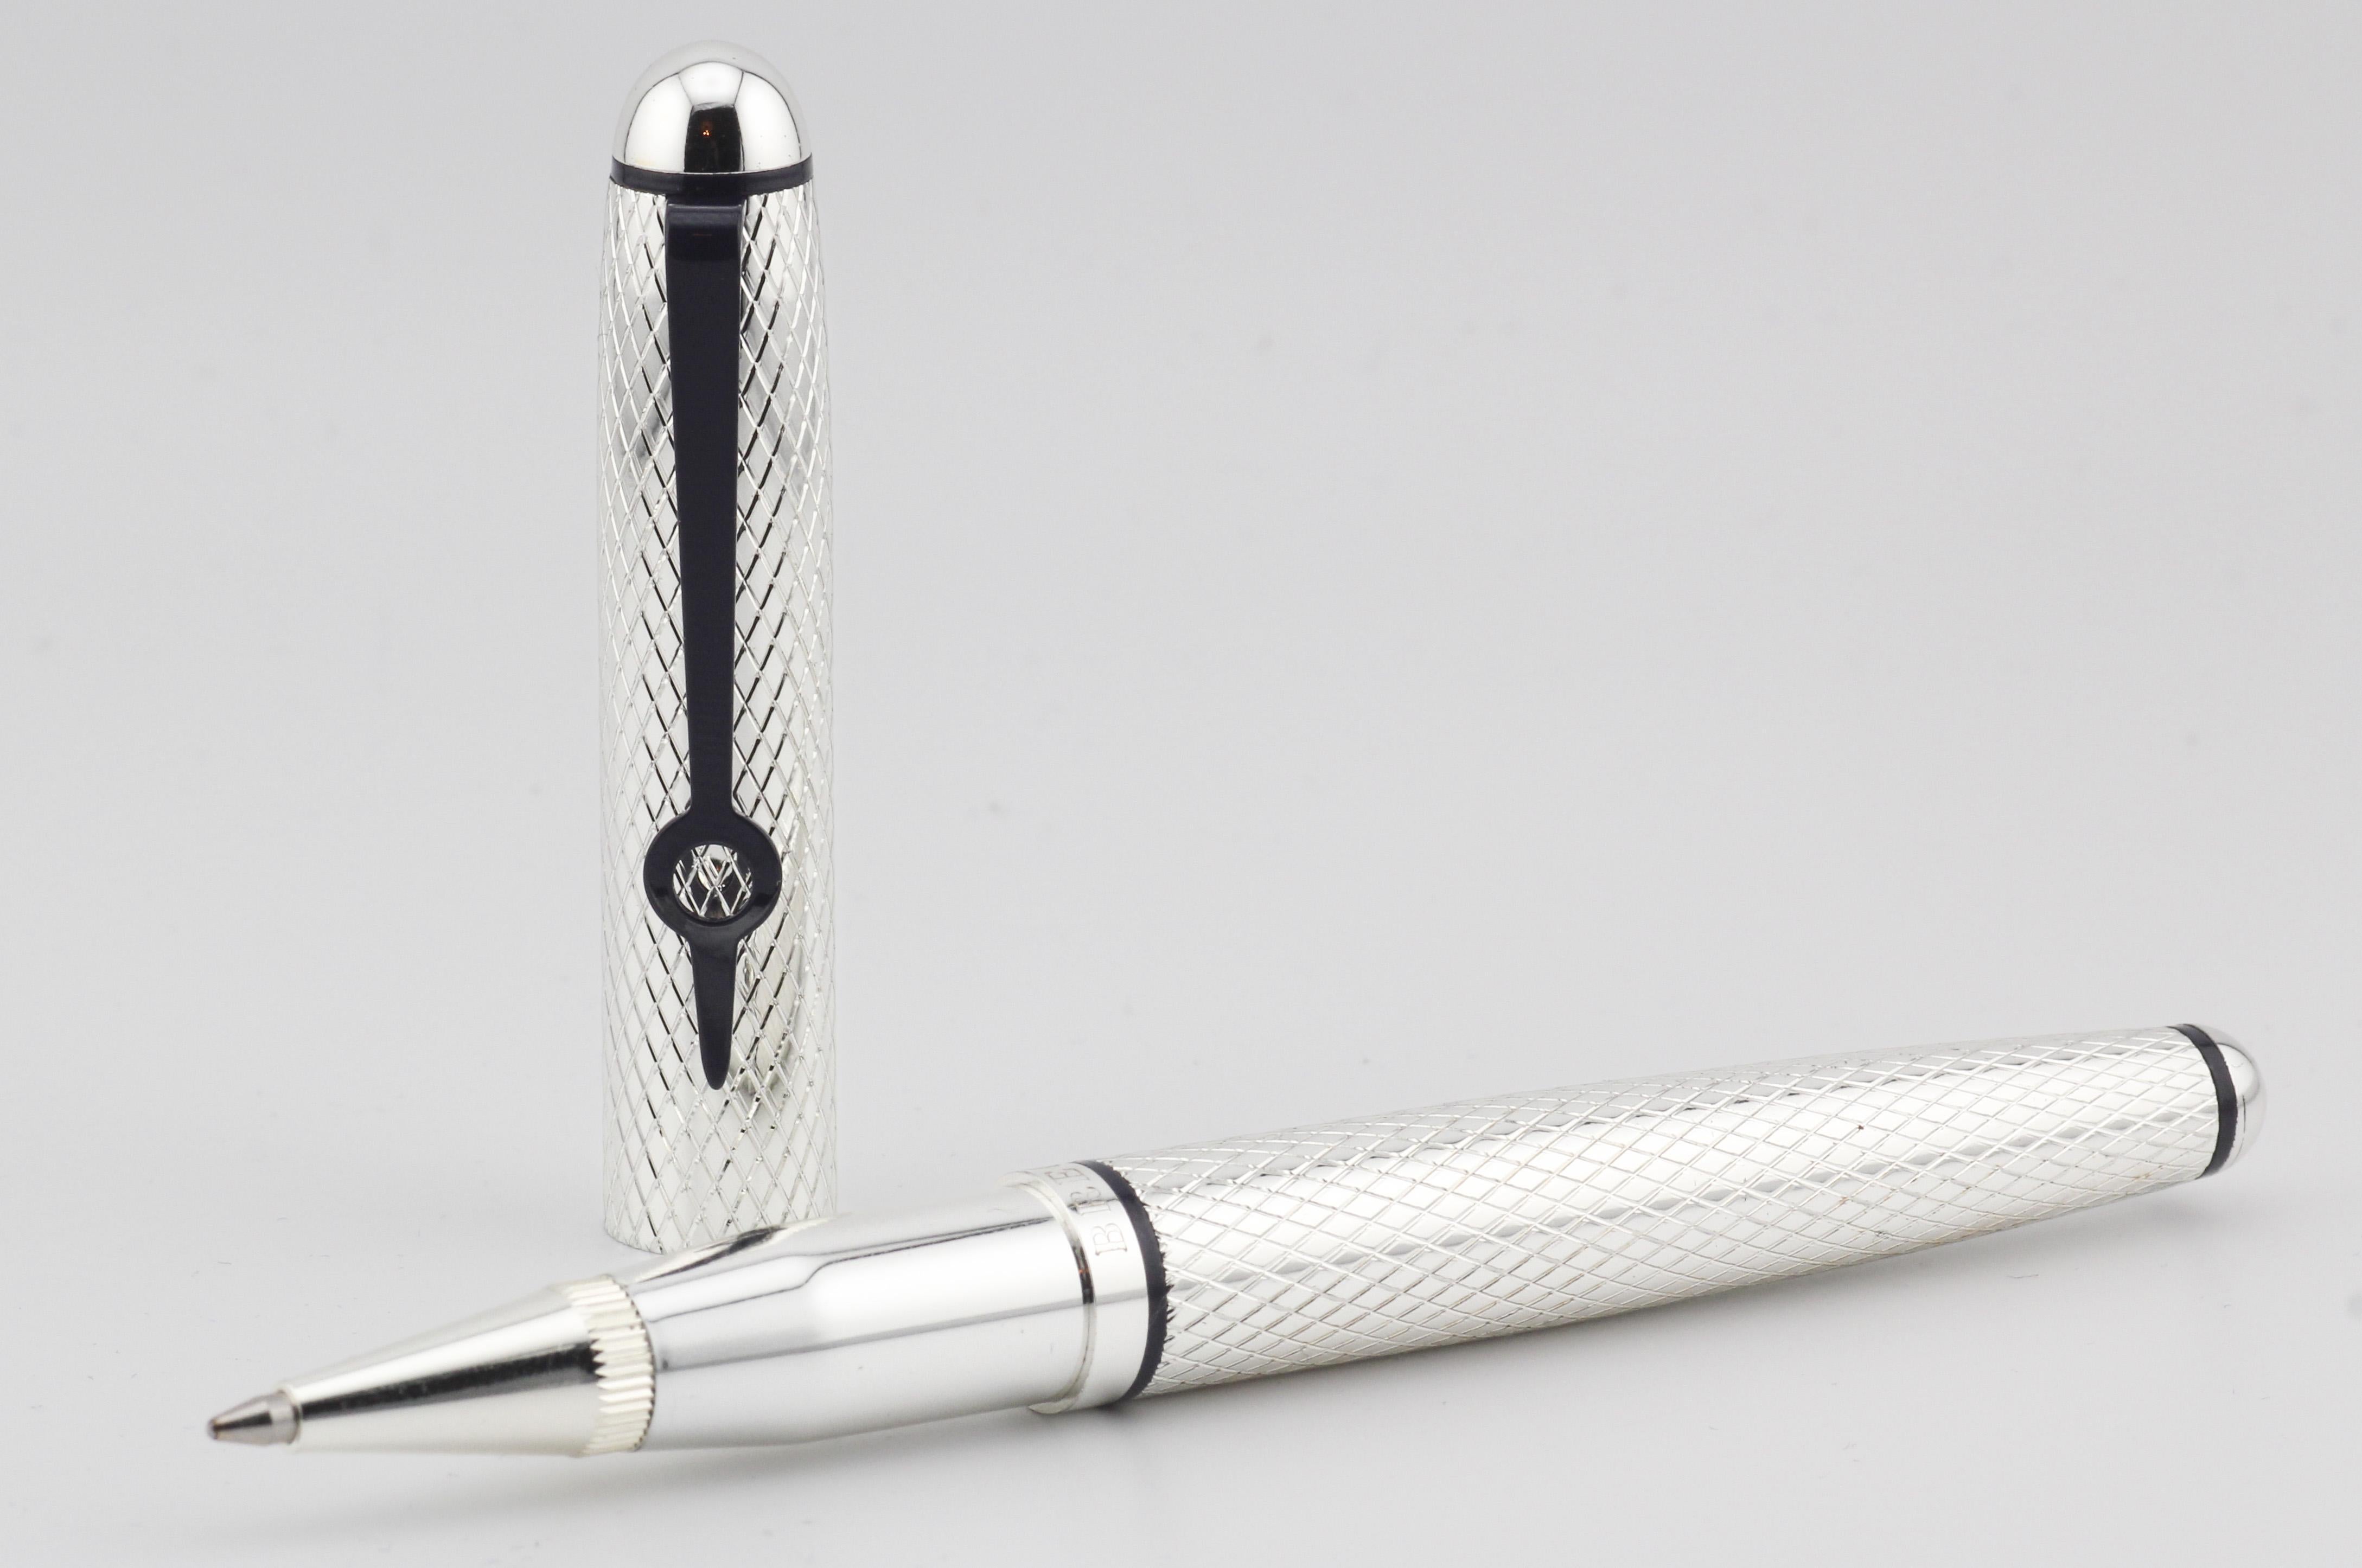 Der silberne Kugelschreiber von Breguet ist ein Symbol für exquisite Handwerkskunst und raffinierte Eleganz. Dieses von der renommierten Schweizer Uhrenmanufaktur Breguet mit größter Sorgfalt gefertigte Schreibgerät ist der Inbegriff von Luxus und